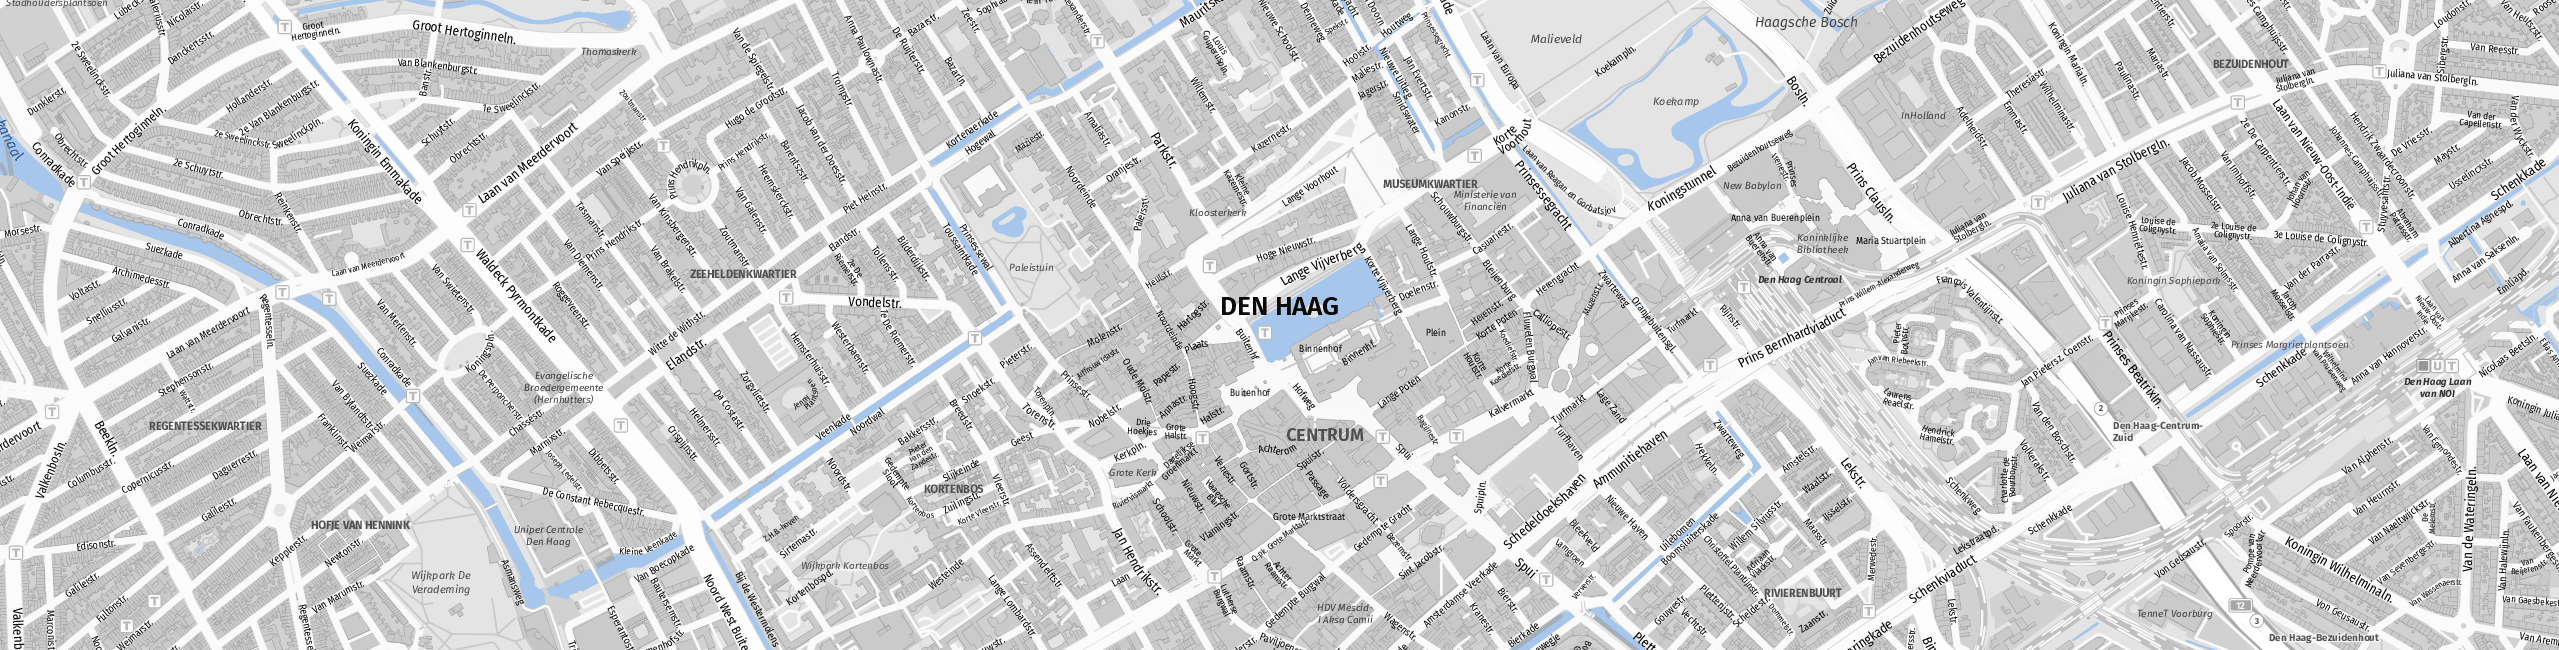 Stadtplan Den Haag zum Downloaden.